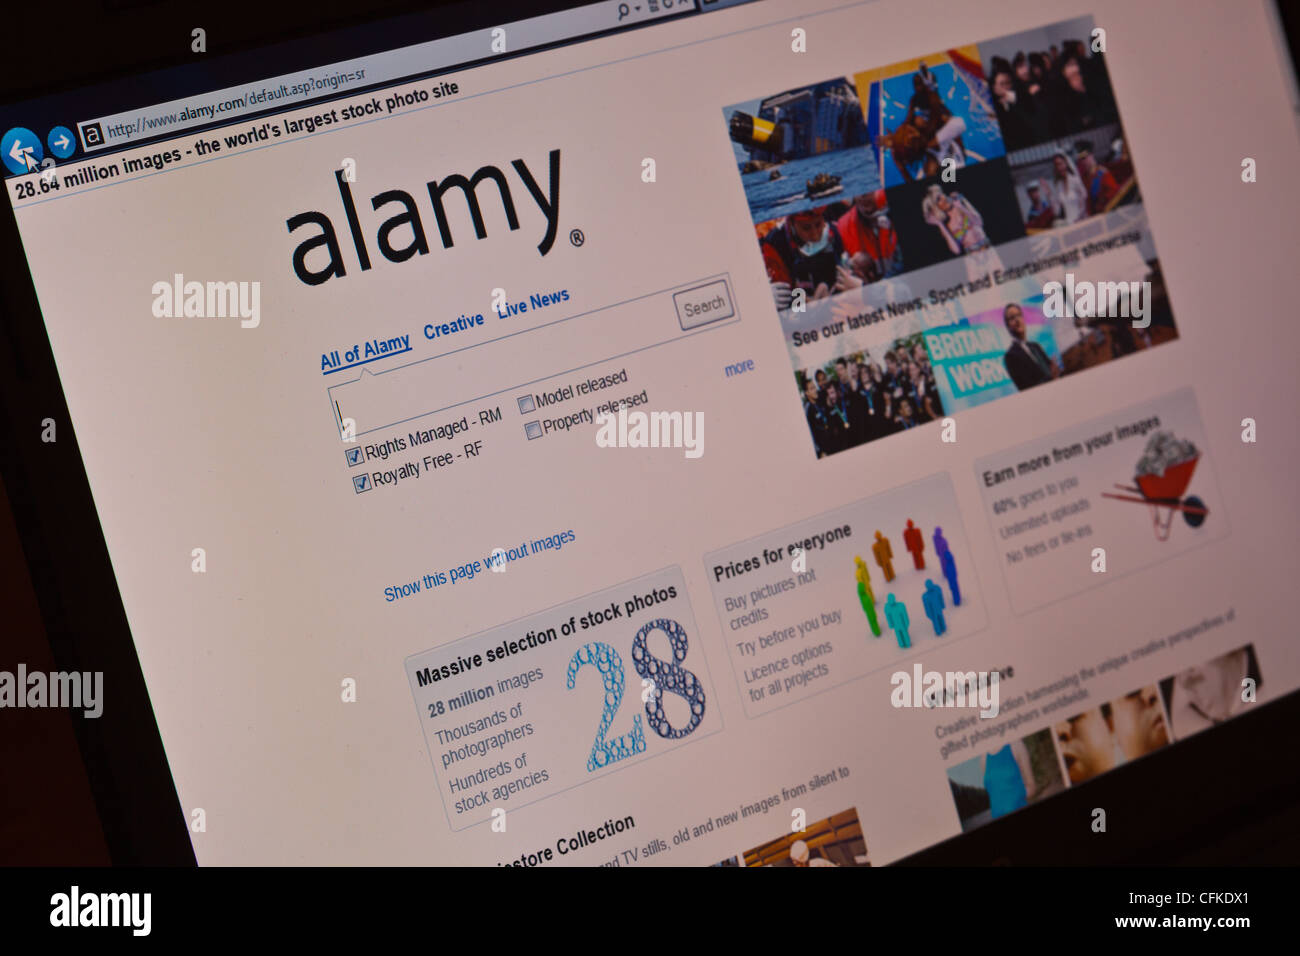 alamy.com,alamydotcom,alamy homepage. Stock Photo